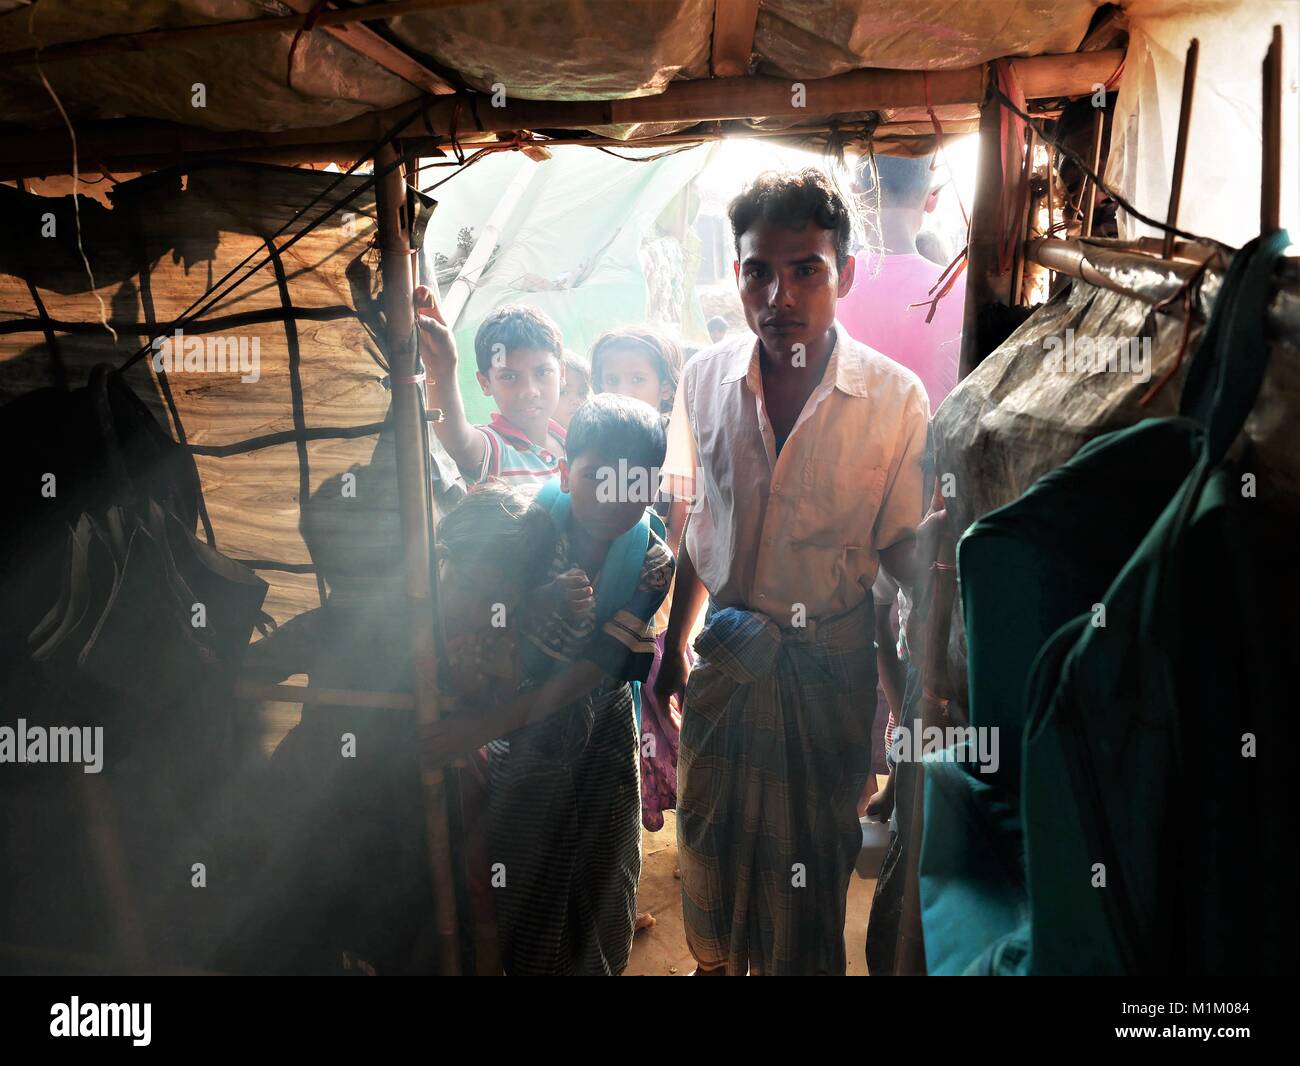 Januar 18, 2018 - Cox's Bazar, Bangladesch - ein rohingya Flüchtlinge Familie gesehen in die Befristete Unterkunft Zelt in der Kutupalong Flüchtlingslager. Sogar Papst Franziskus war nicht erlaubt, ein Wort ''''Rohingya in Myanmar zu sagen. Mehr als eine Million Rohingya Flüchtlinge, die im August 2017 floh aus Rakhine State in Myanmar gezwungen waren, ihr Leben zu retten von ethnischen Säuberungen leben in sehr einfachen Bedingungen in den Flüchtlingslagern in Bangladesch und ihre Zukunft ist sehr unsicher. Sie haben Angst, nach Hause zurückzukehren - aber Rückführung Vertrag wurde bereits unterzeichnet, in dem sie in ihre Heimat zurückzukehren. Stockfoto